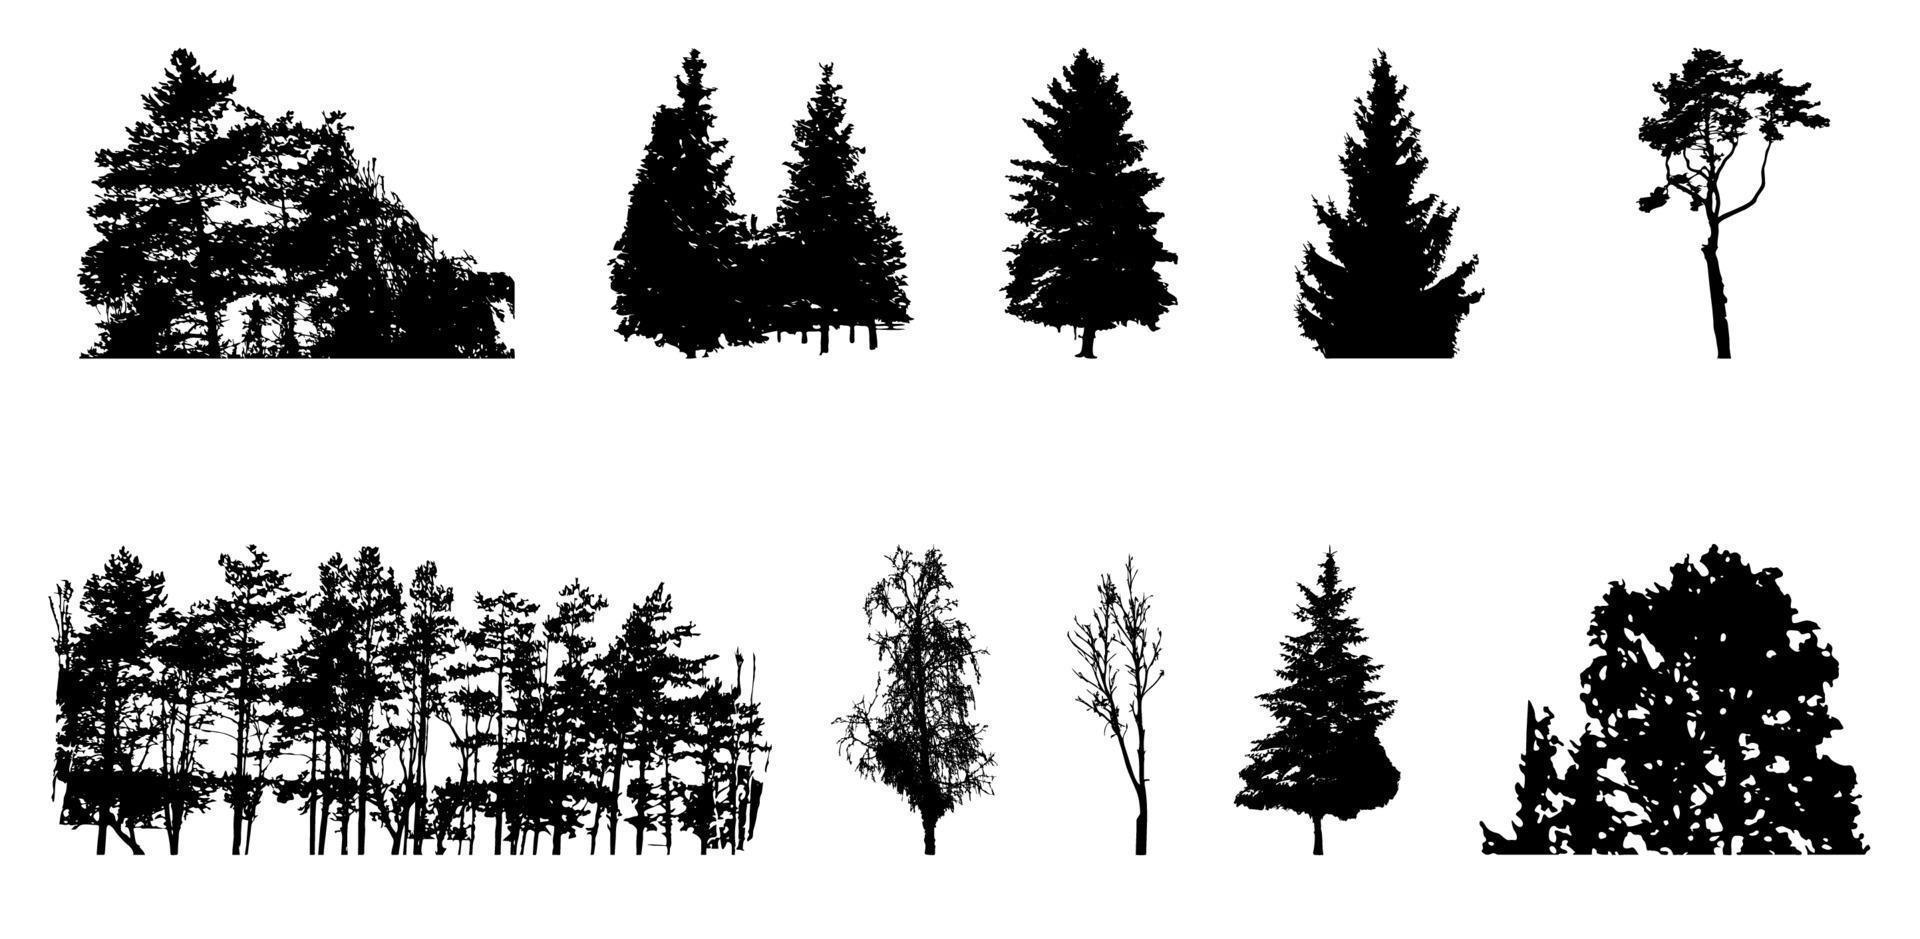 conjunto de silueta de árbol aislado sobre fondo blanco. vecrtor ilustración. vector